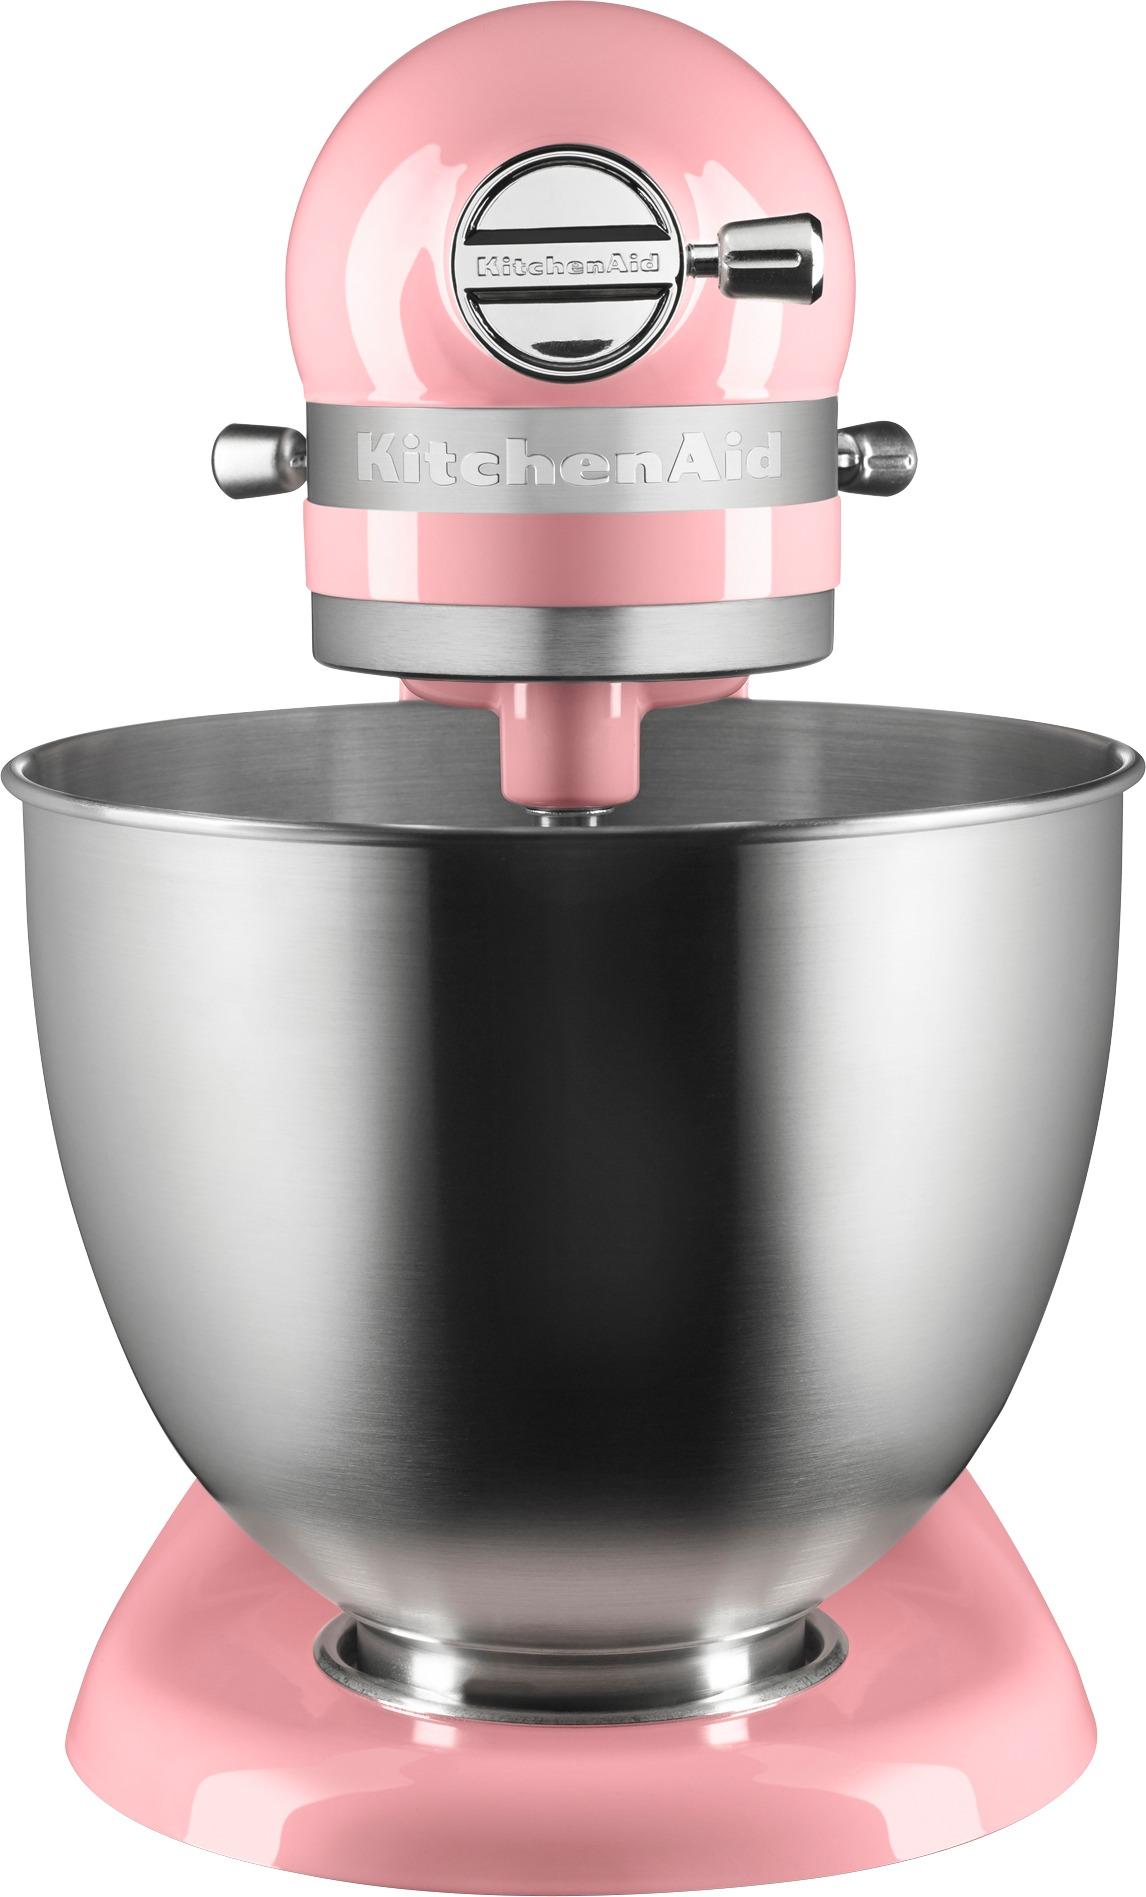 KitchenAid KSM3311XGU Artisan Mini Tilt-Head Stand Mixer Guava glaze